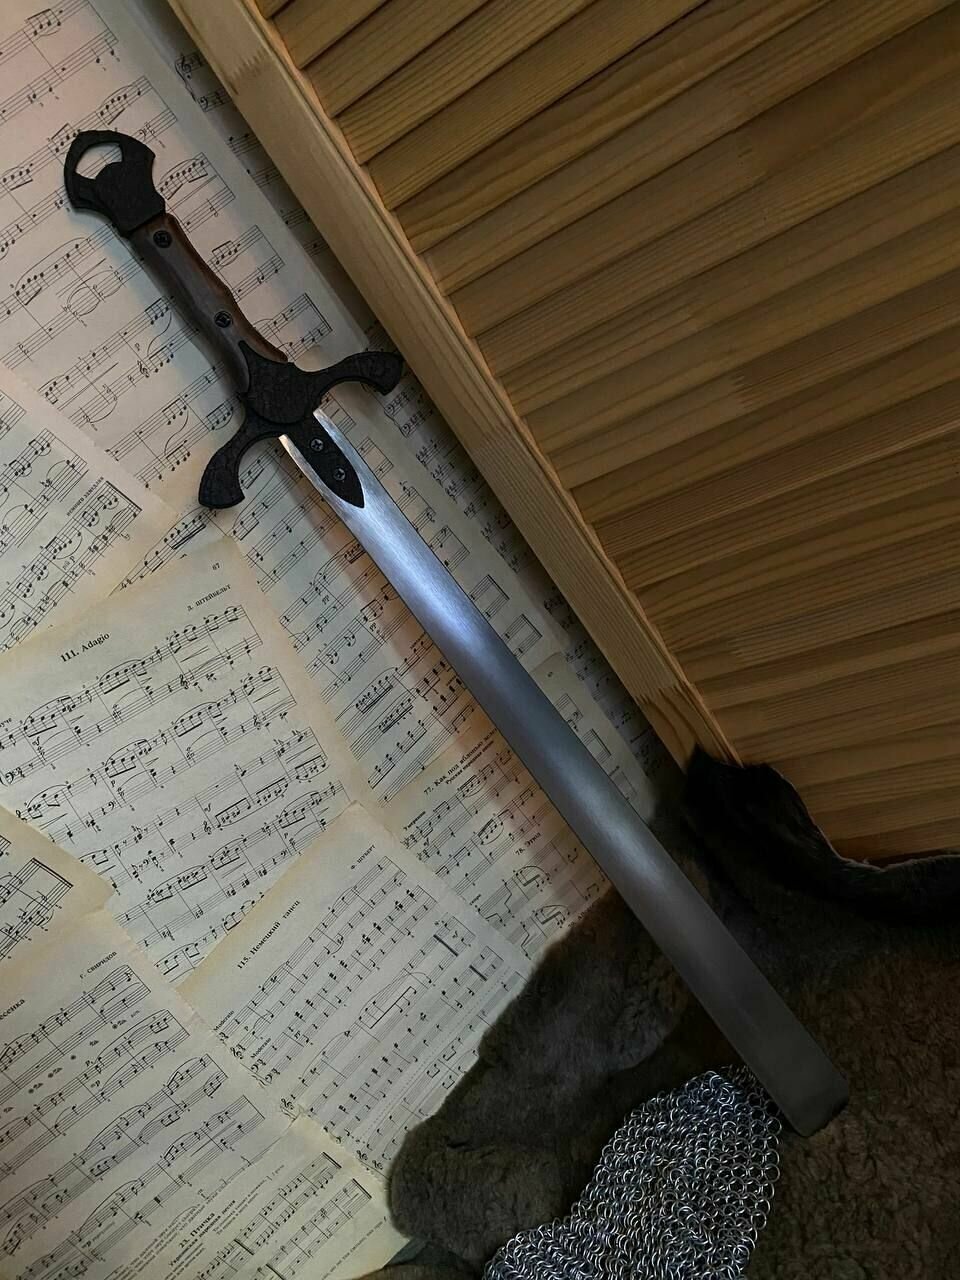 Ложка для обуви металлическая / рожок для обуви, меч лопатка черный дракон с крючком Нуар обувной, длинный 80 см